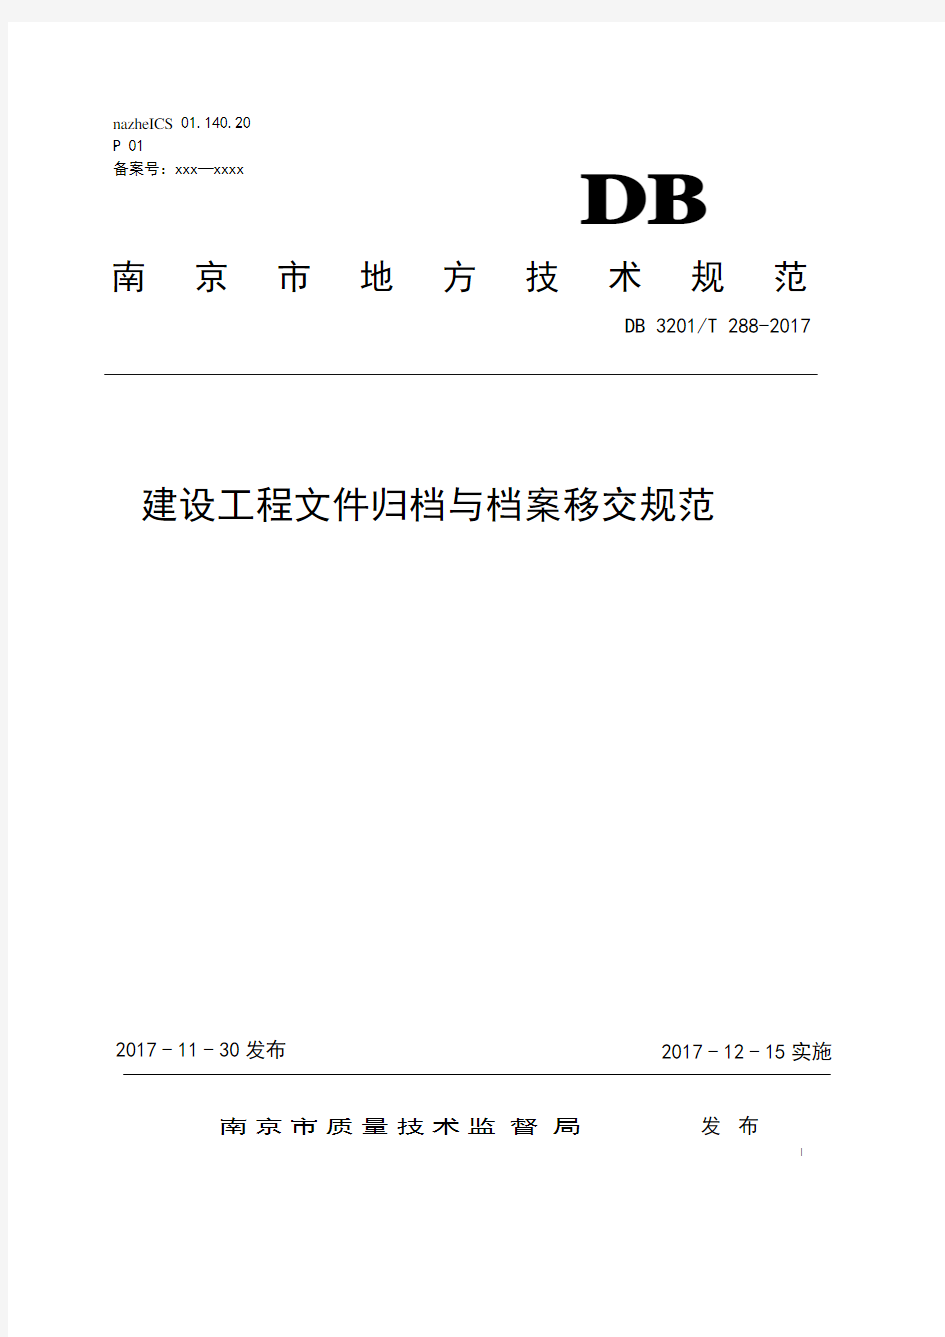 南京市建设工程文件归档与档案移交规范外